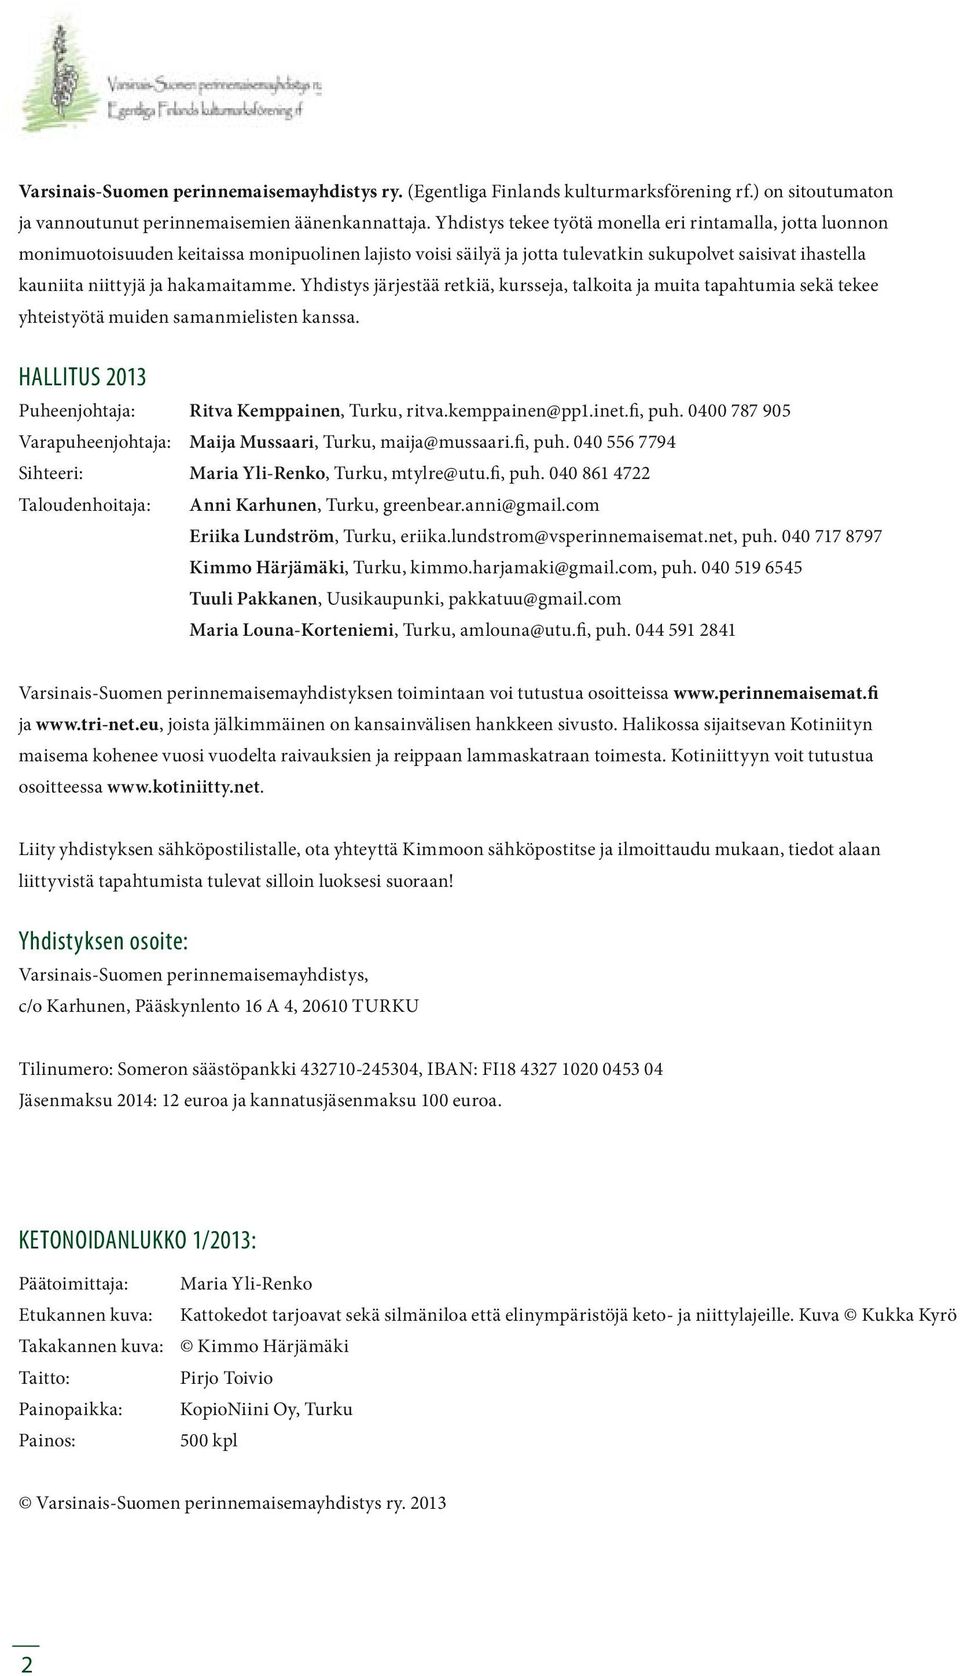 hakamaitamme. Yhdistys järjestää retkiä, kursseja, talkoita ja muita tapahtumia sekä tekee yhteistyötä muiden samanmielisten kanssa. HALLITUS 2013 Puheenjohtaja: Ritva Kemppainen, Turku, ritva.